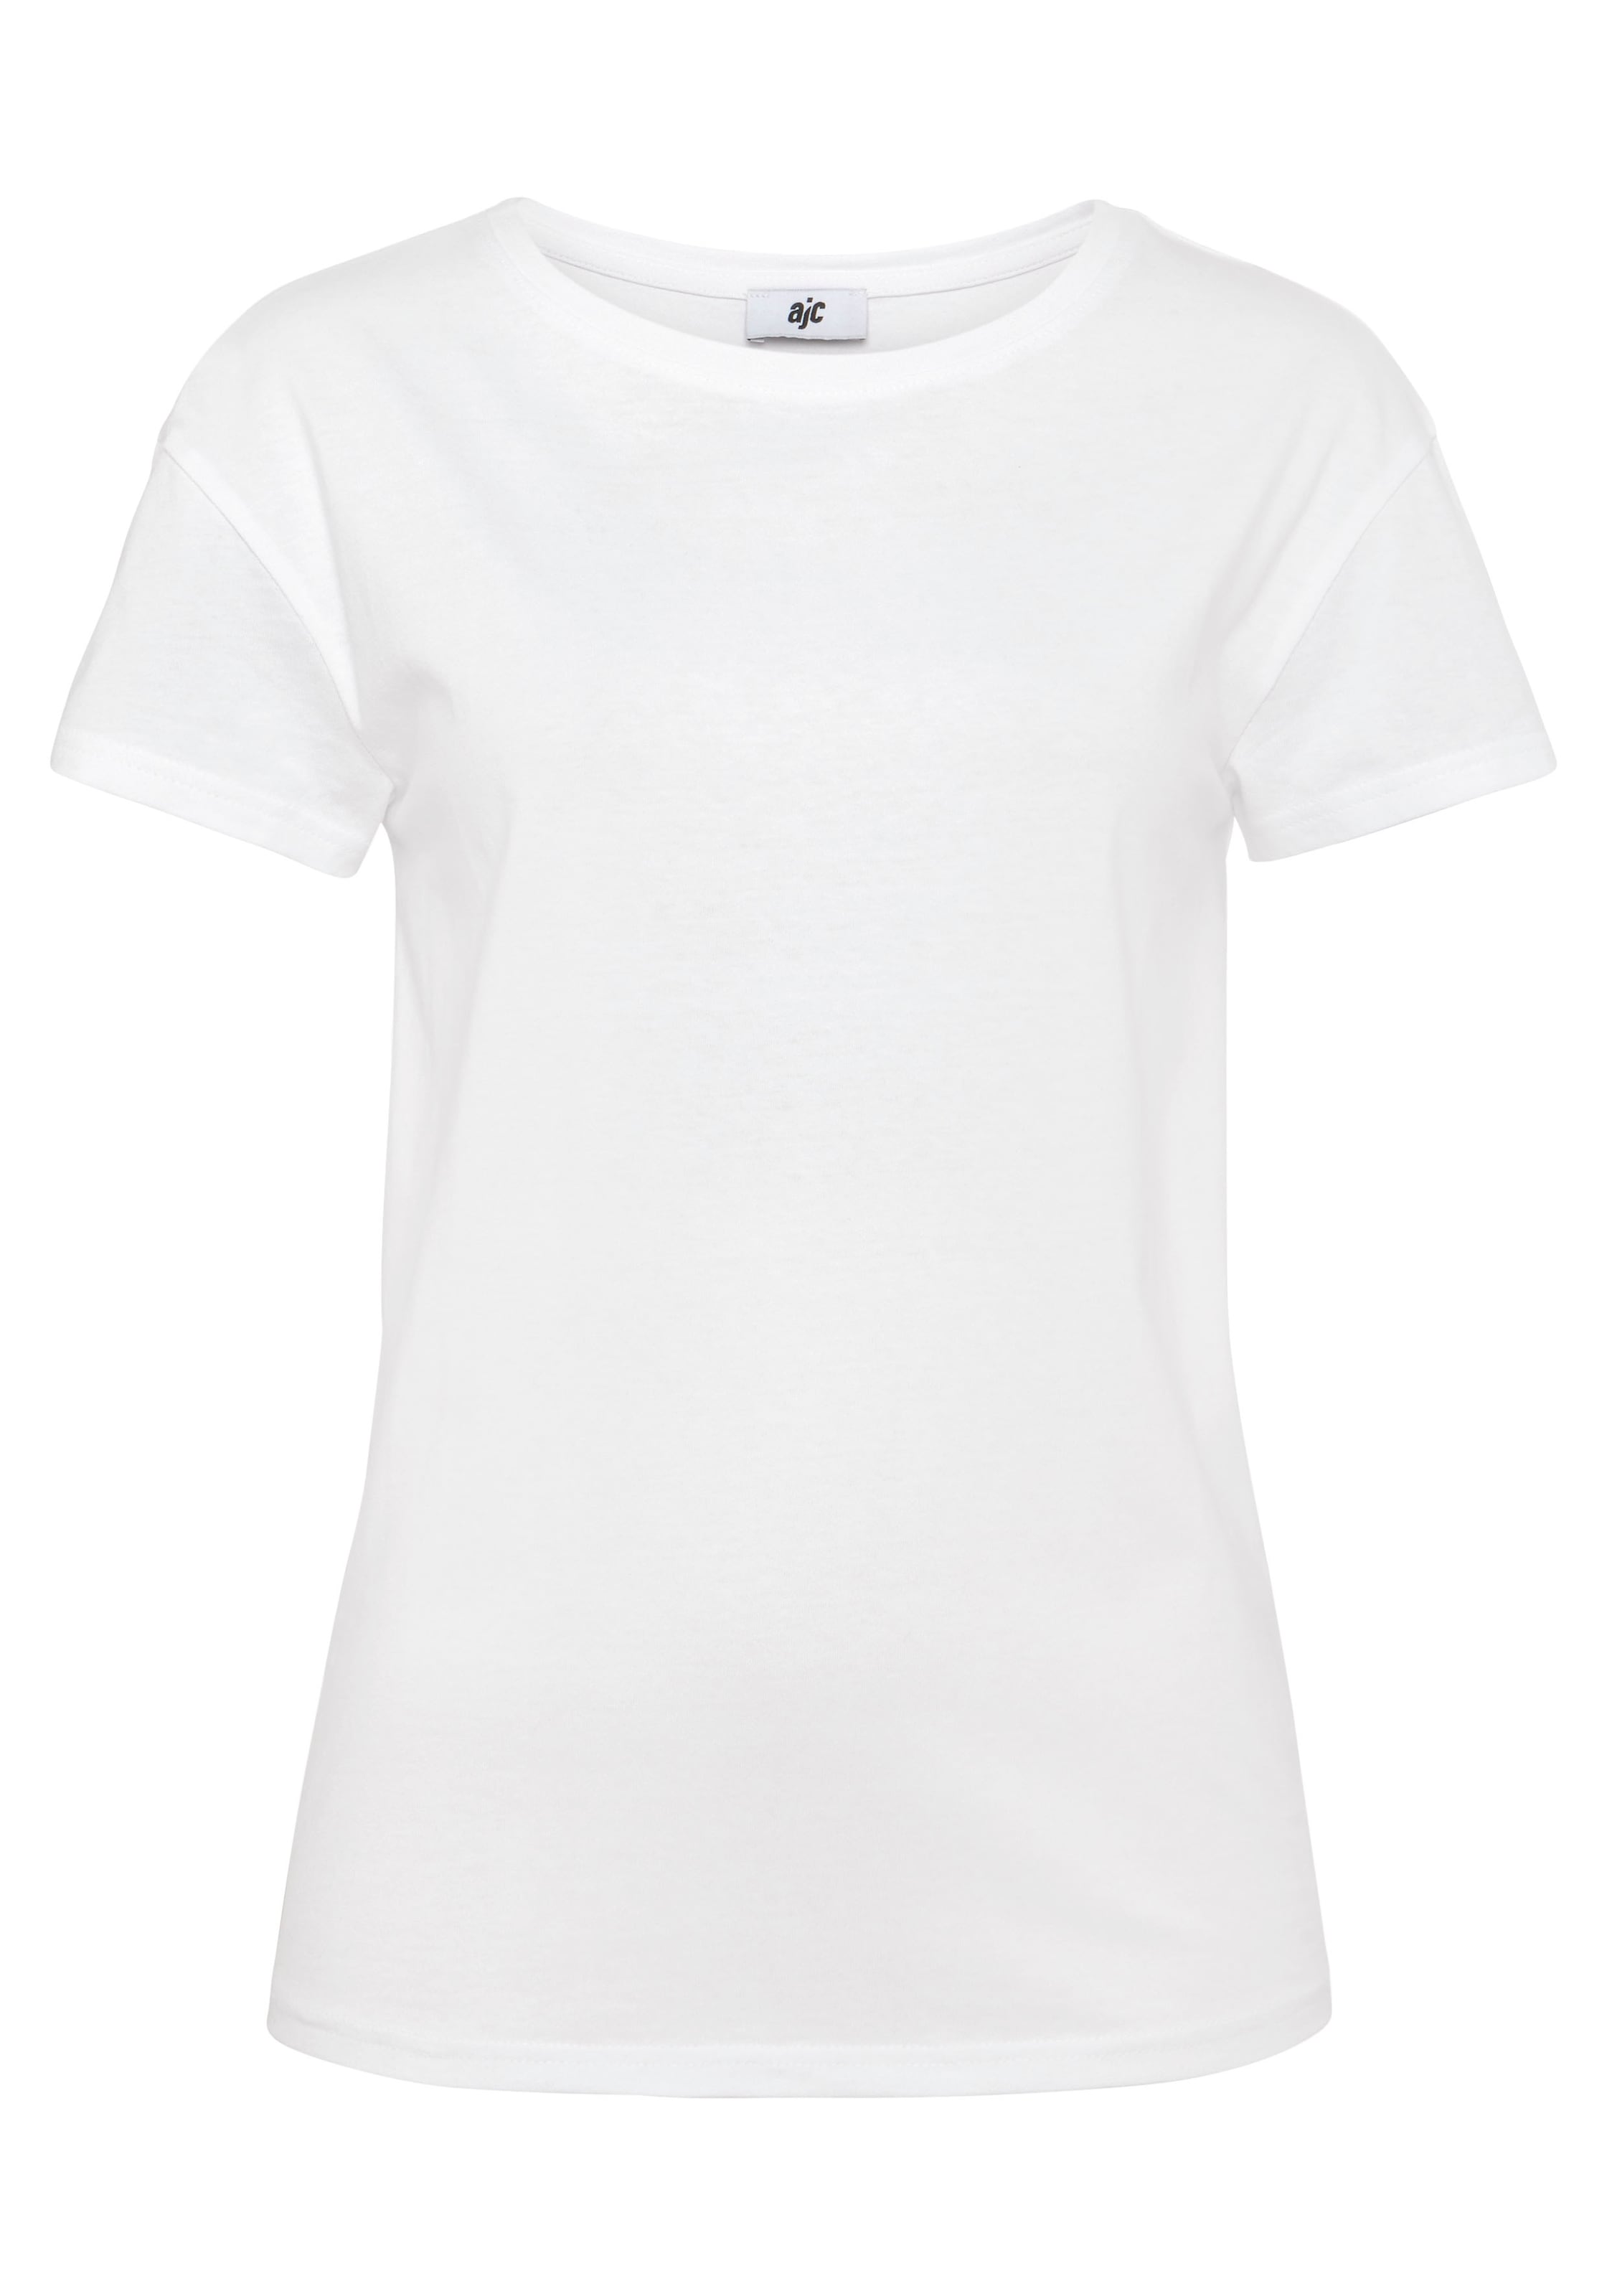 AJC T-Shirt, im trendigen Oversized-Look - NEUE KOLLEKTION